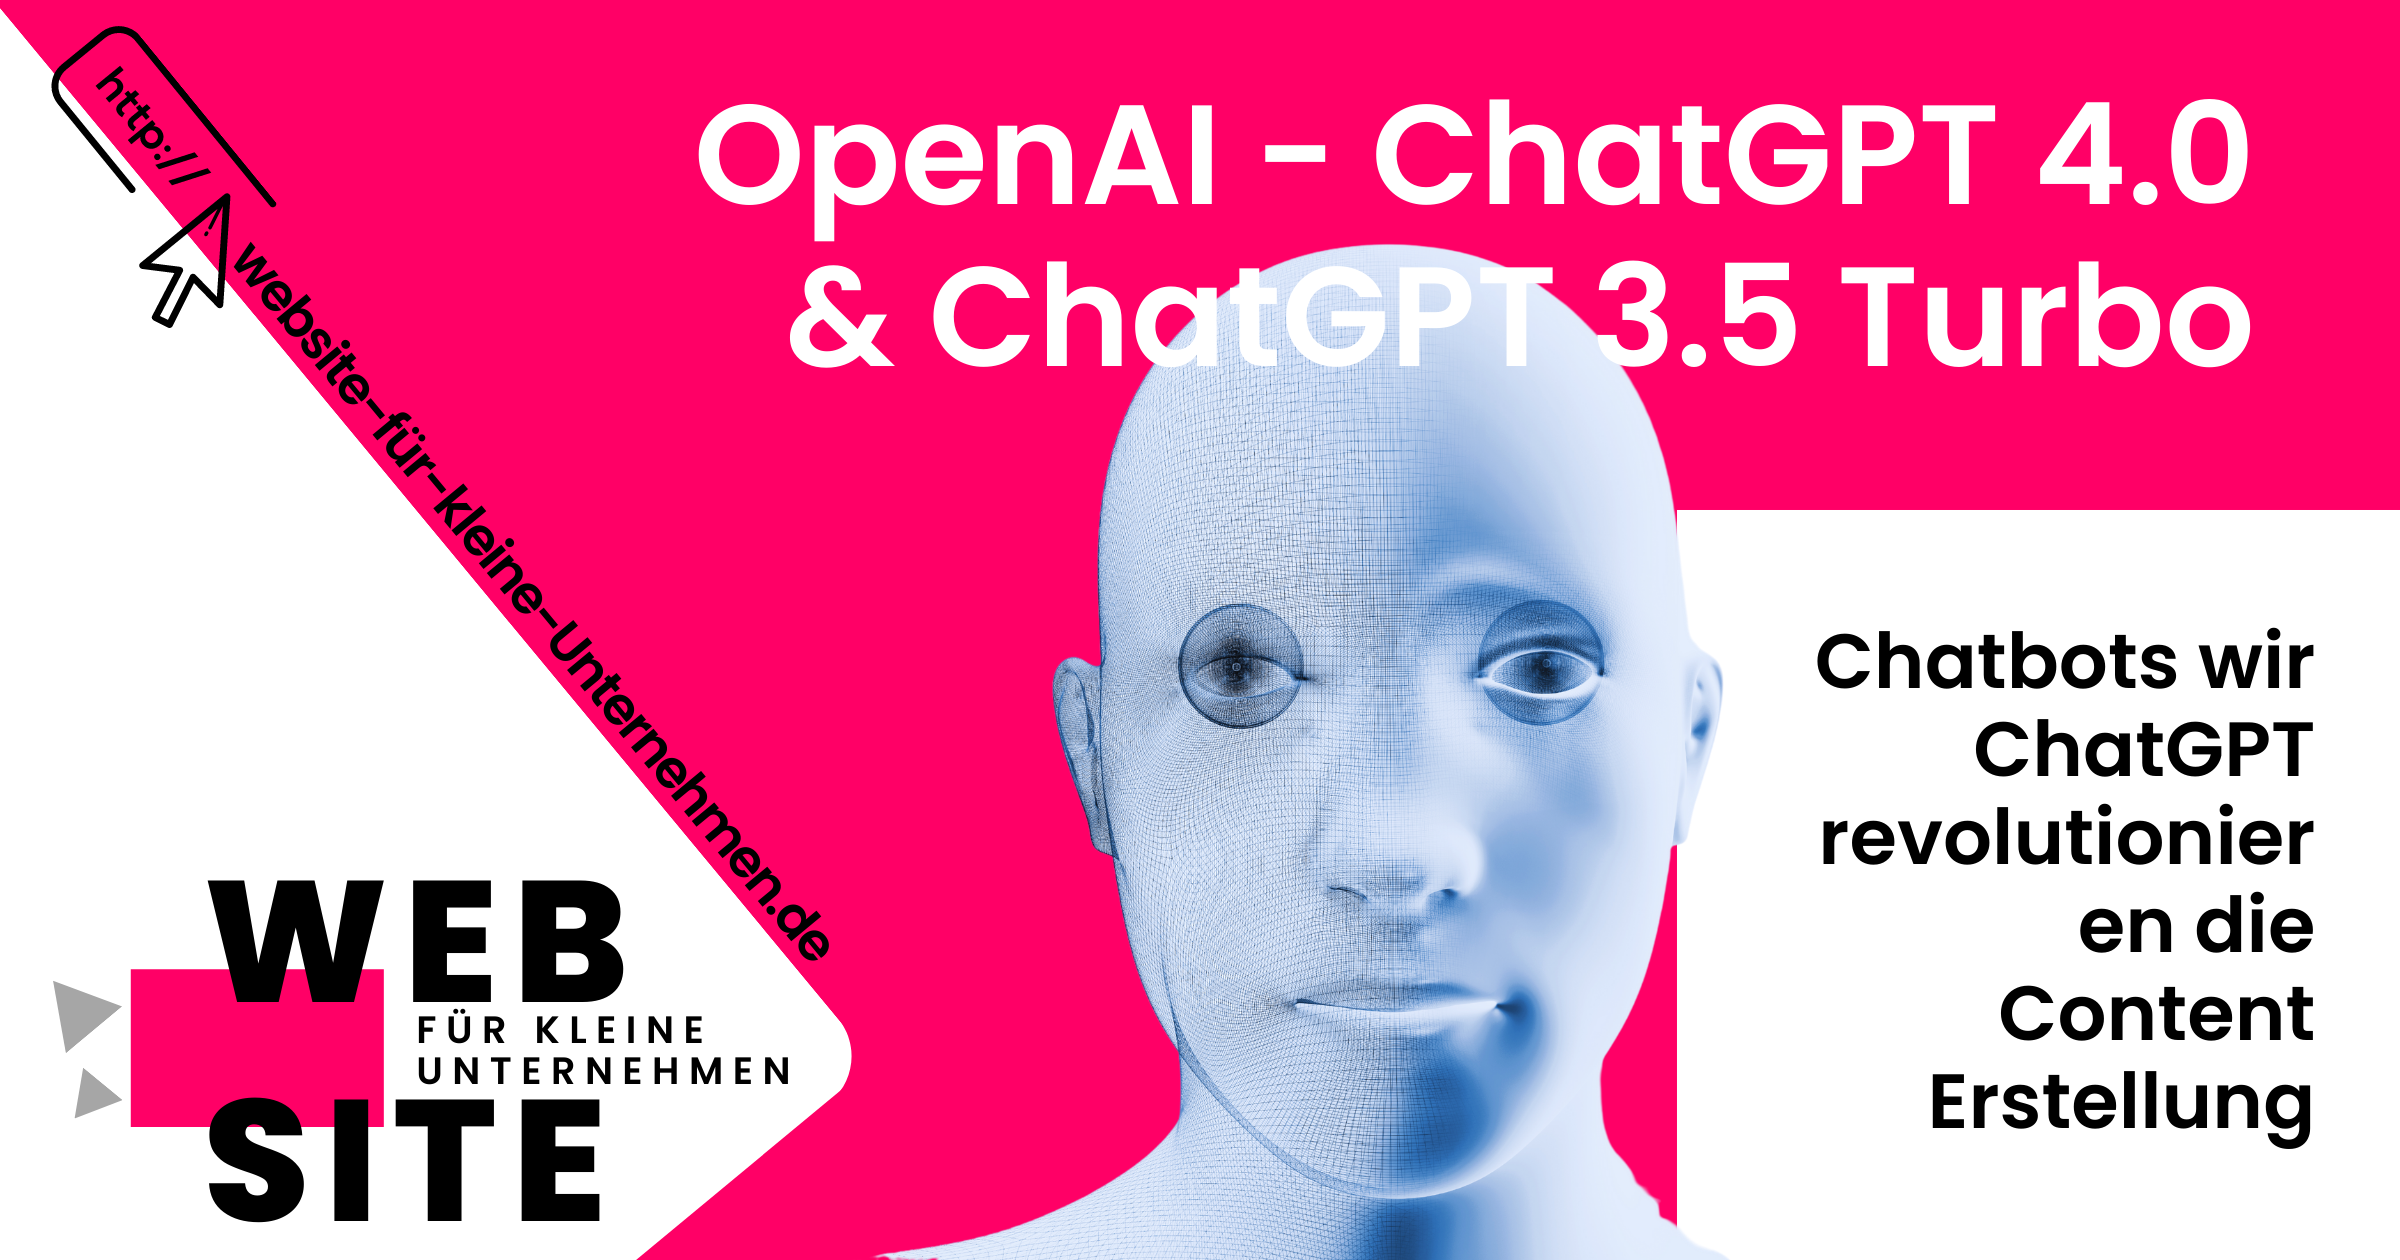 KI - künstliche Intelligenz im Marketing für Unternehmen - OpenAI - ChatGPT 4.0 und ChatGPT 3.5